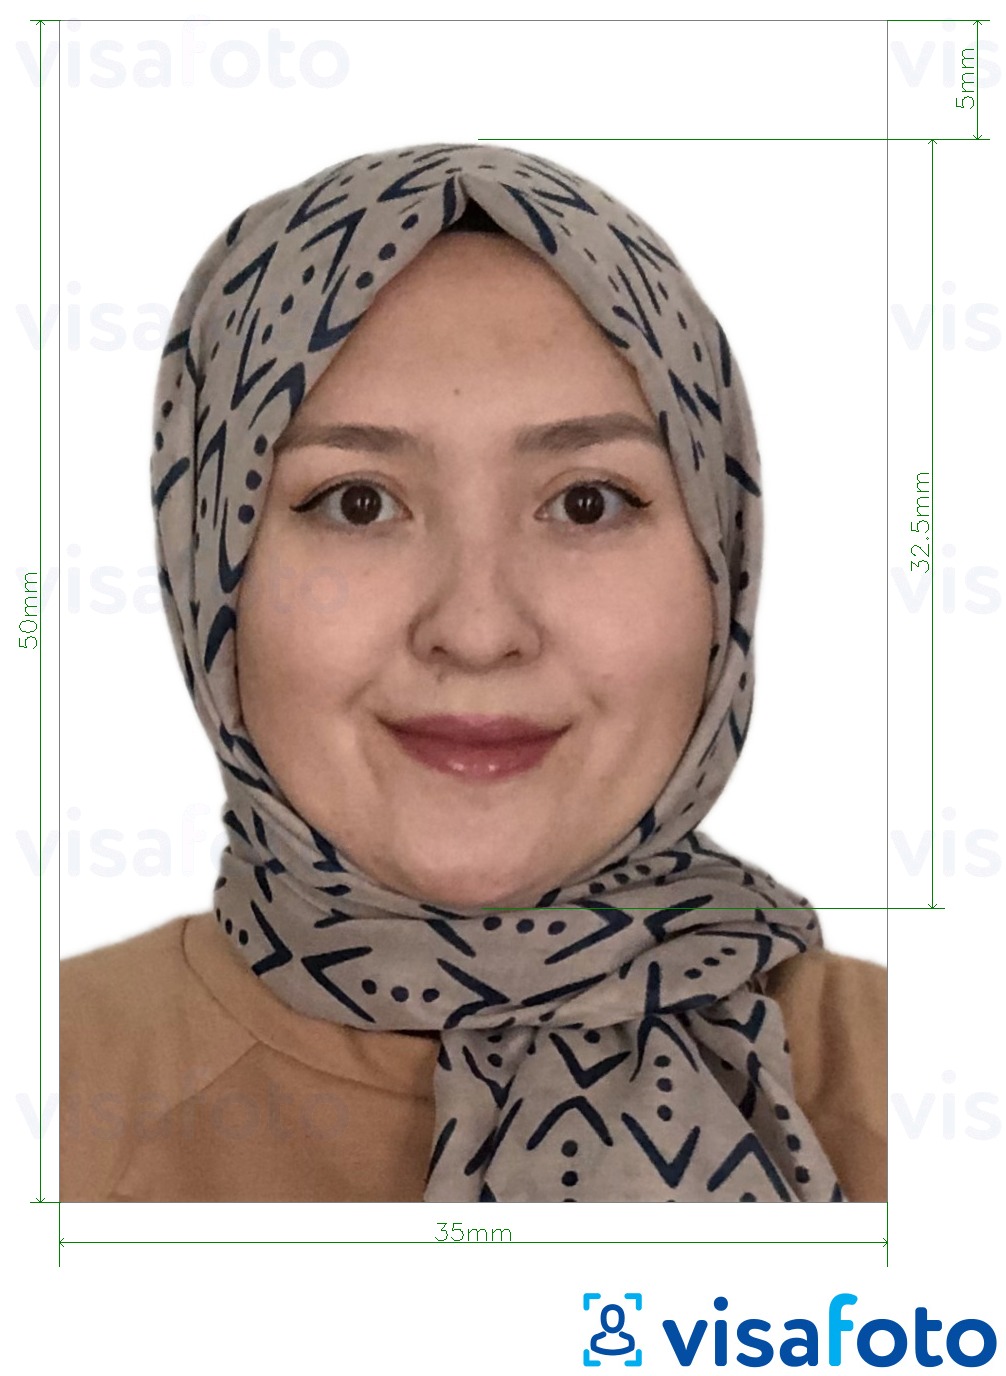 Przykład zdjęcia dla Malezja e-visa online 35x50 mm z podaniem dokładnego rozmiaru.